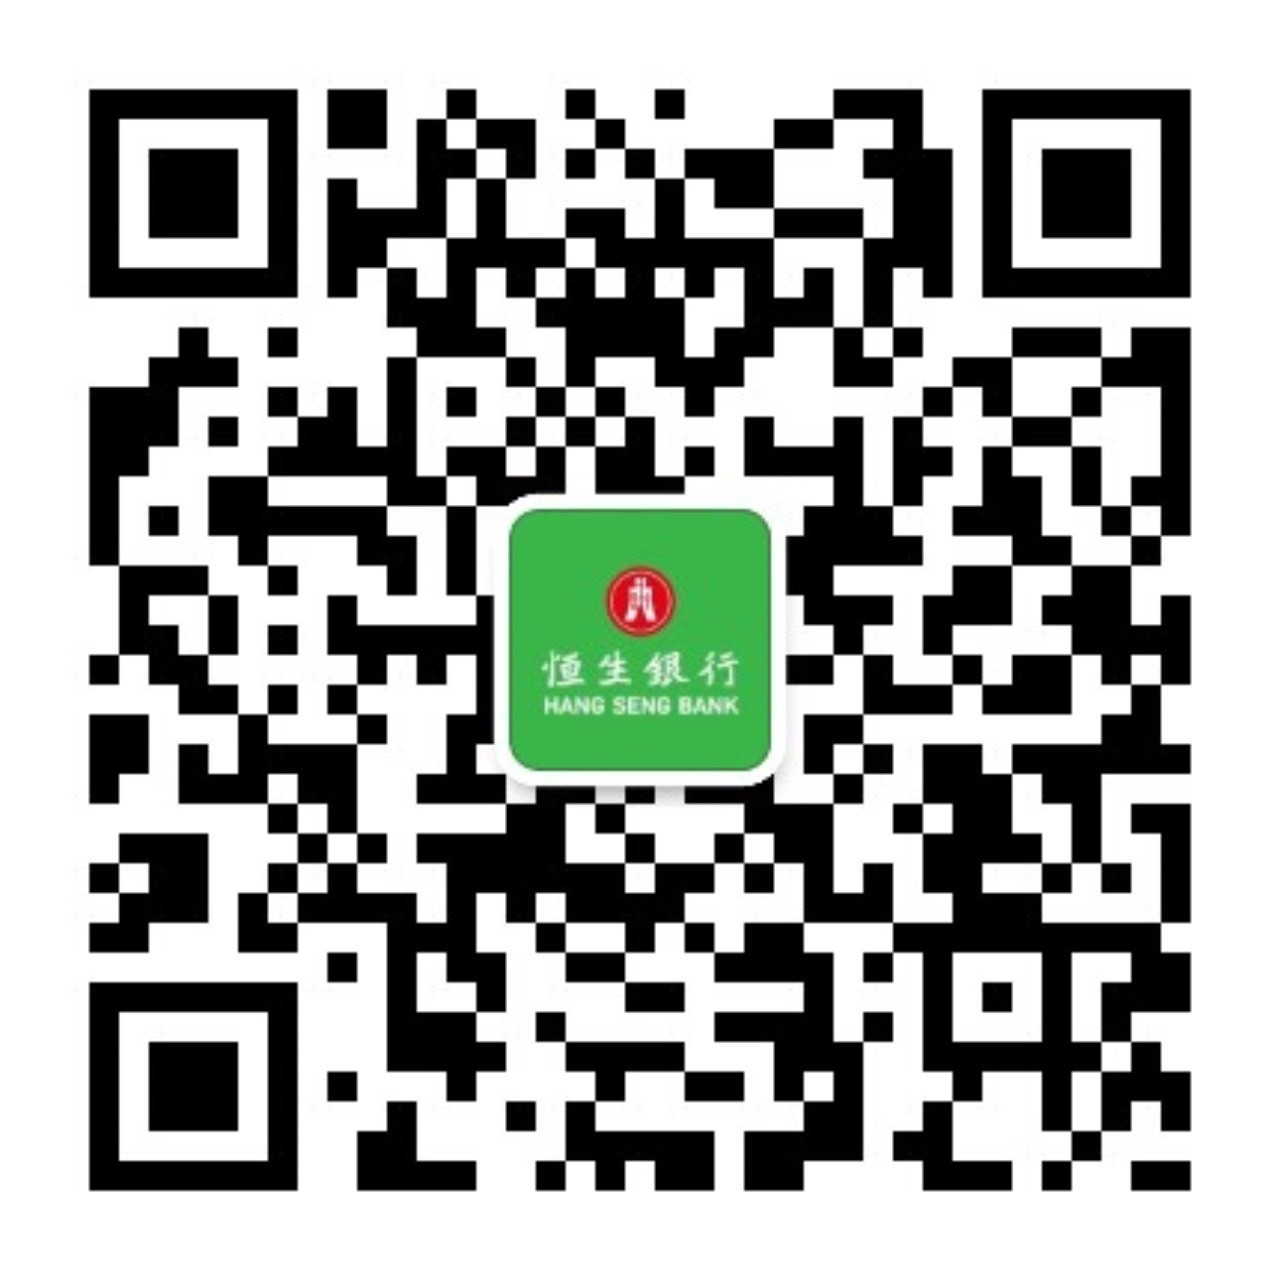 在微信APP中搜索 HangSeng_HK 或 恒生香港個人理財， 或扫描二维码即可关注我们。